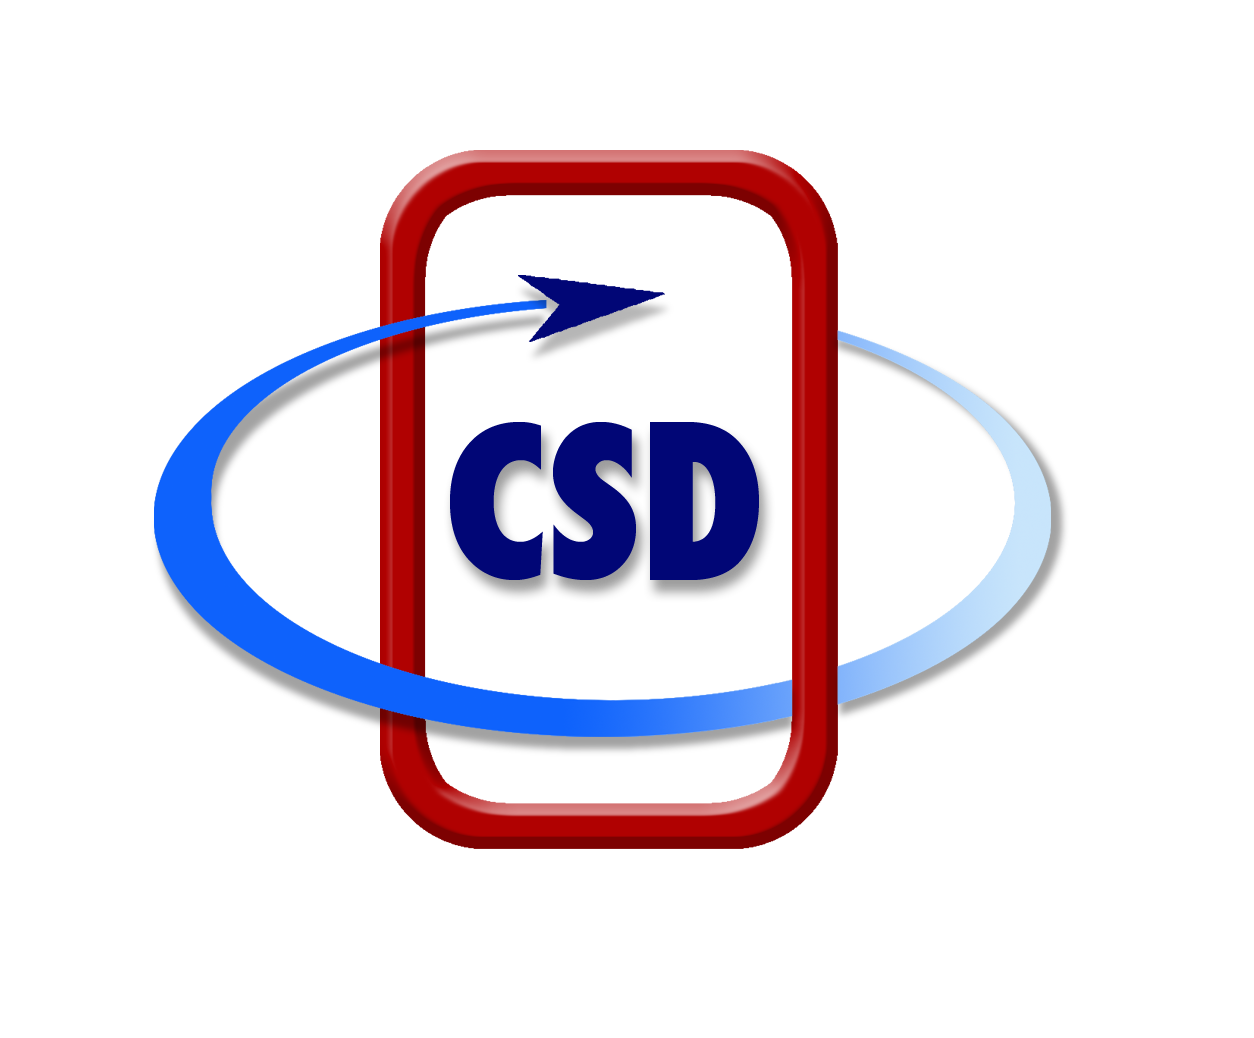 csd flandria Vector Logo - Download Free SVG Icon | Worldvectorlogo